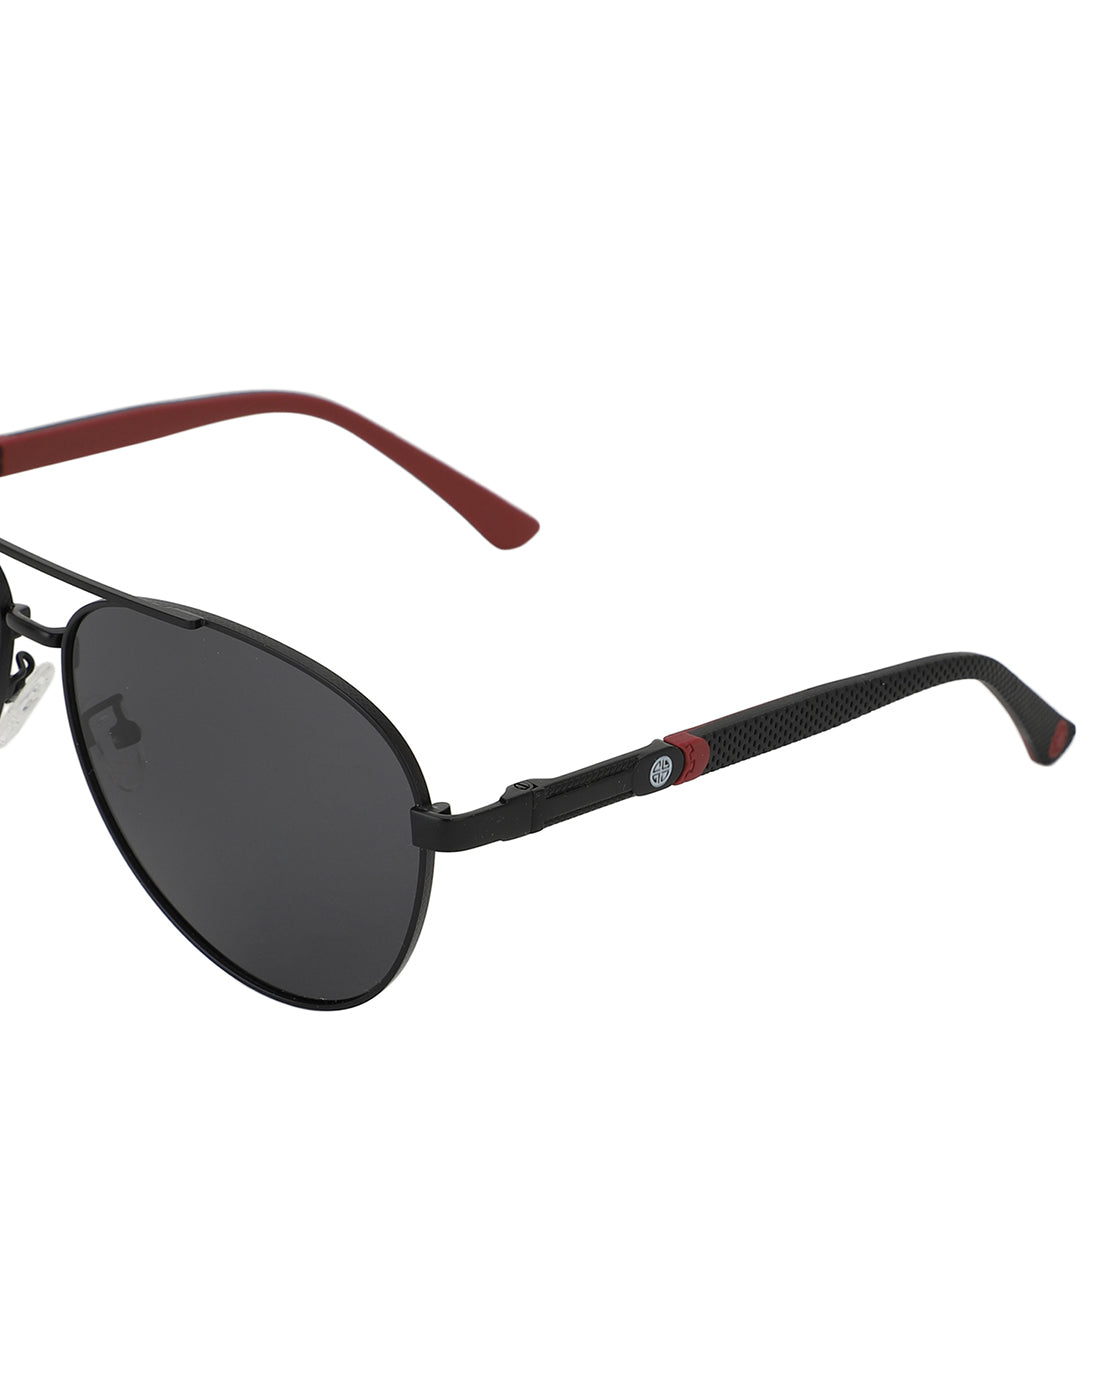 Men's Aviator Glasses | Men's Aviator Eyeglasses Frames